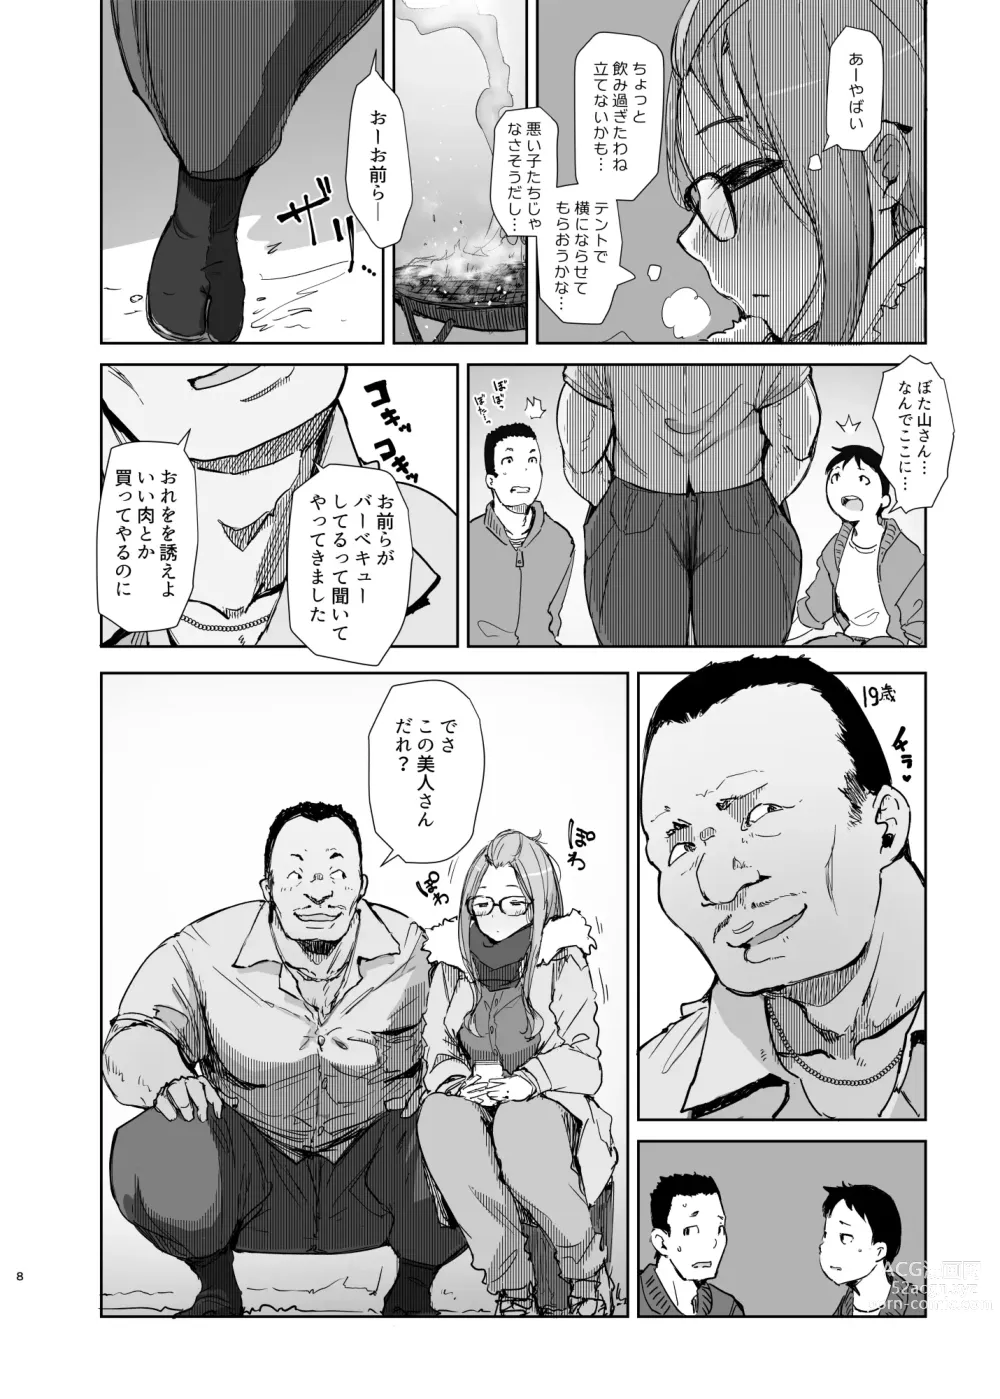 Page 7 of doujinshi Sakura Camp